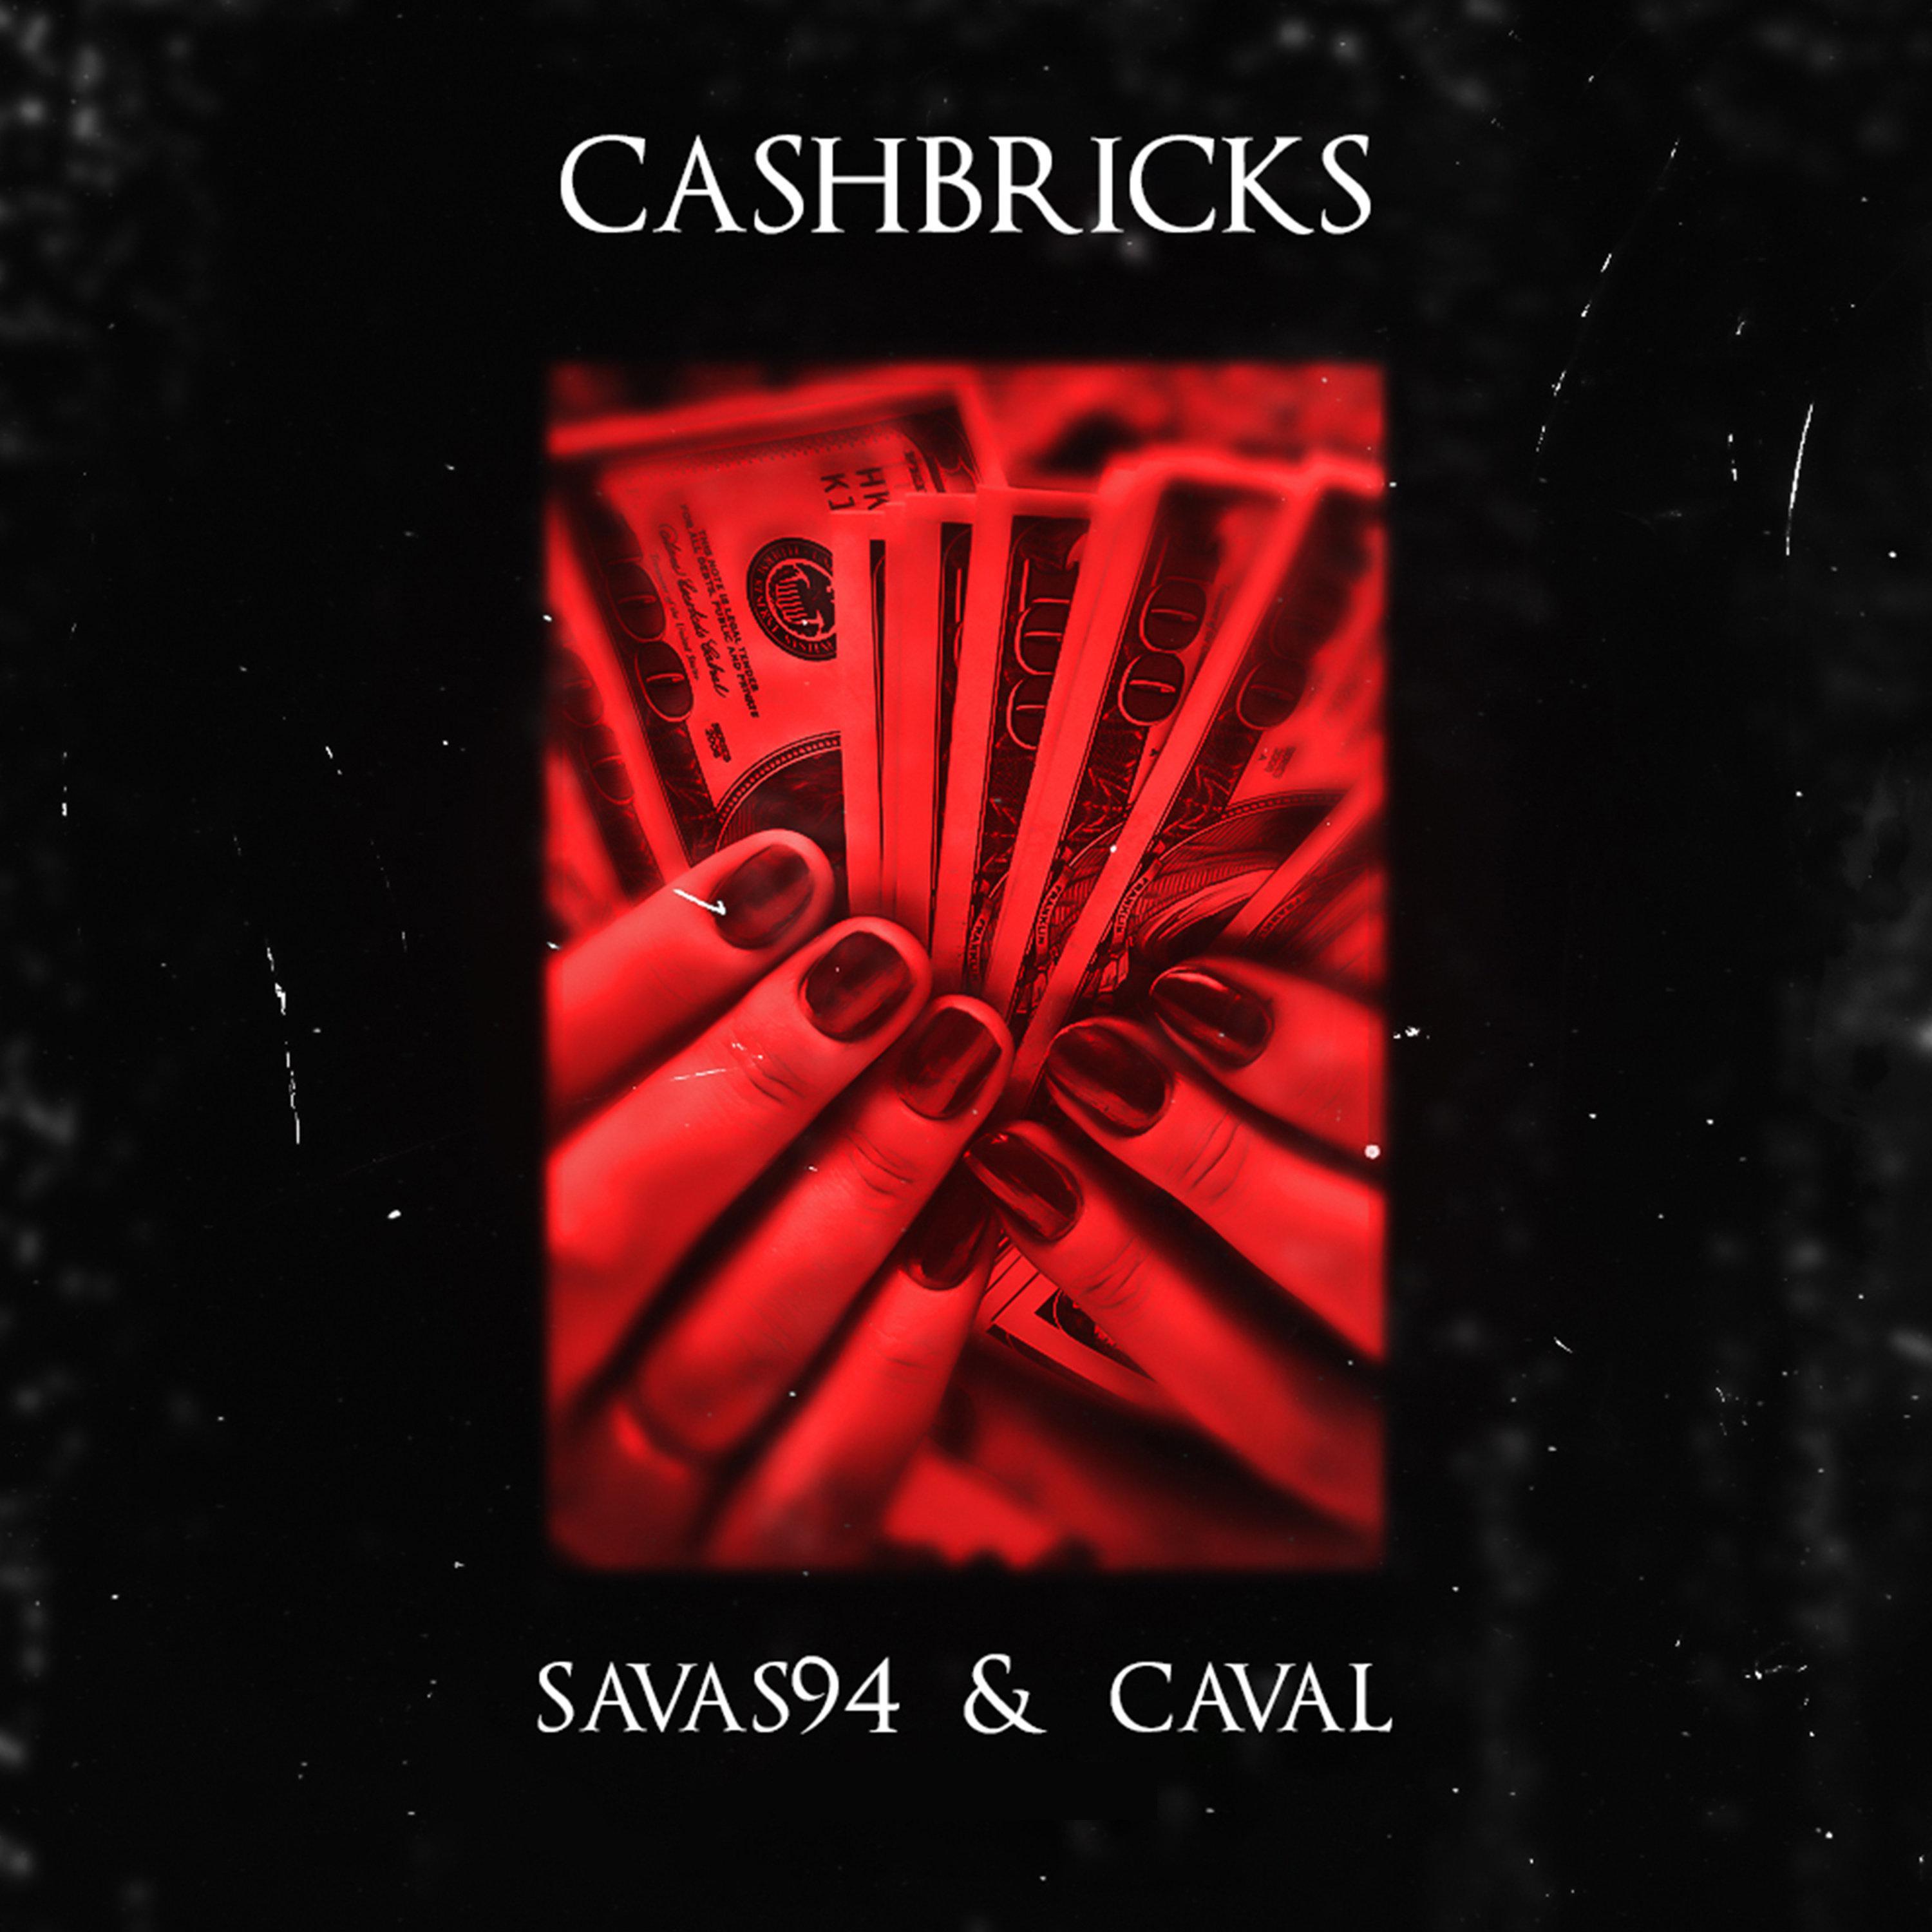 Cashbricks